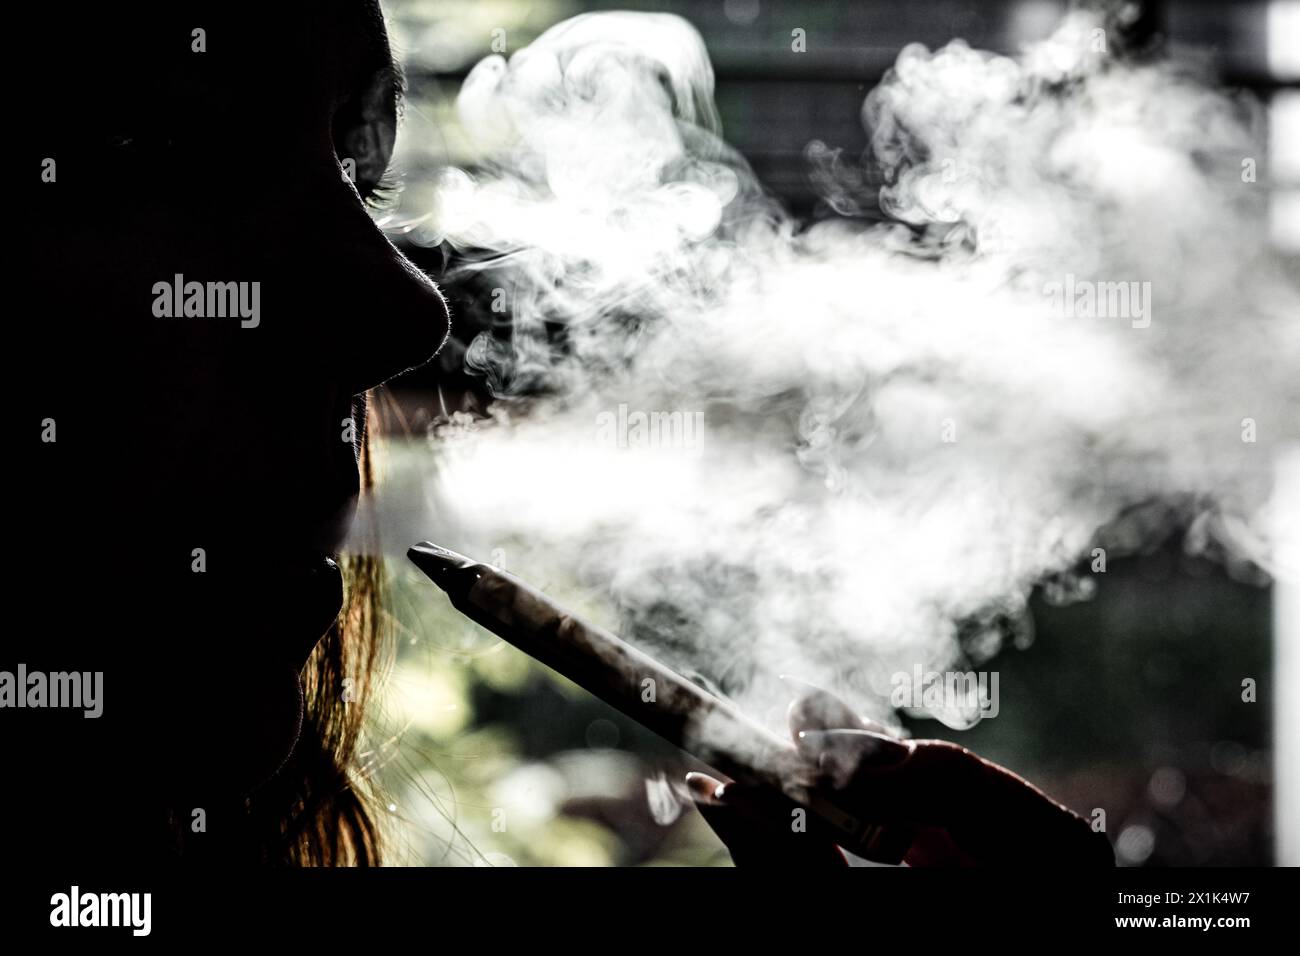 ILLUSTRATION - Eine Frau mit einer E-Zigarette. Das Doctors Slaan Alarm Collective möchte Eltern und Pflegekräfte auf die Gefahren des Dampfens aufmerksam machen. ANP / Hollandse Hoogte / Rob Engelaar niederlande aus - belgien aus Stockfoto